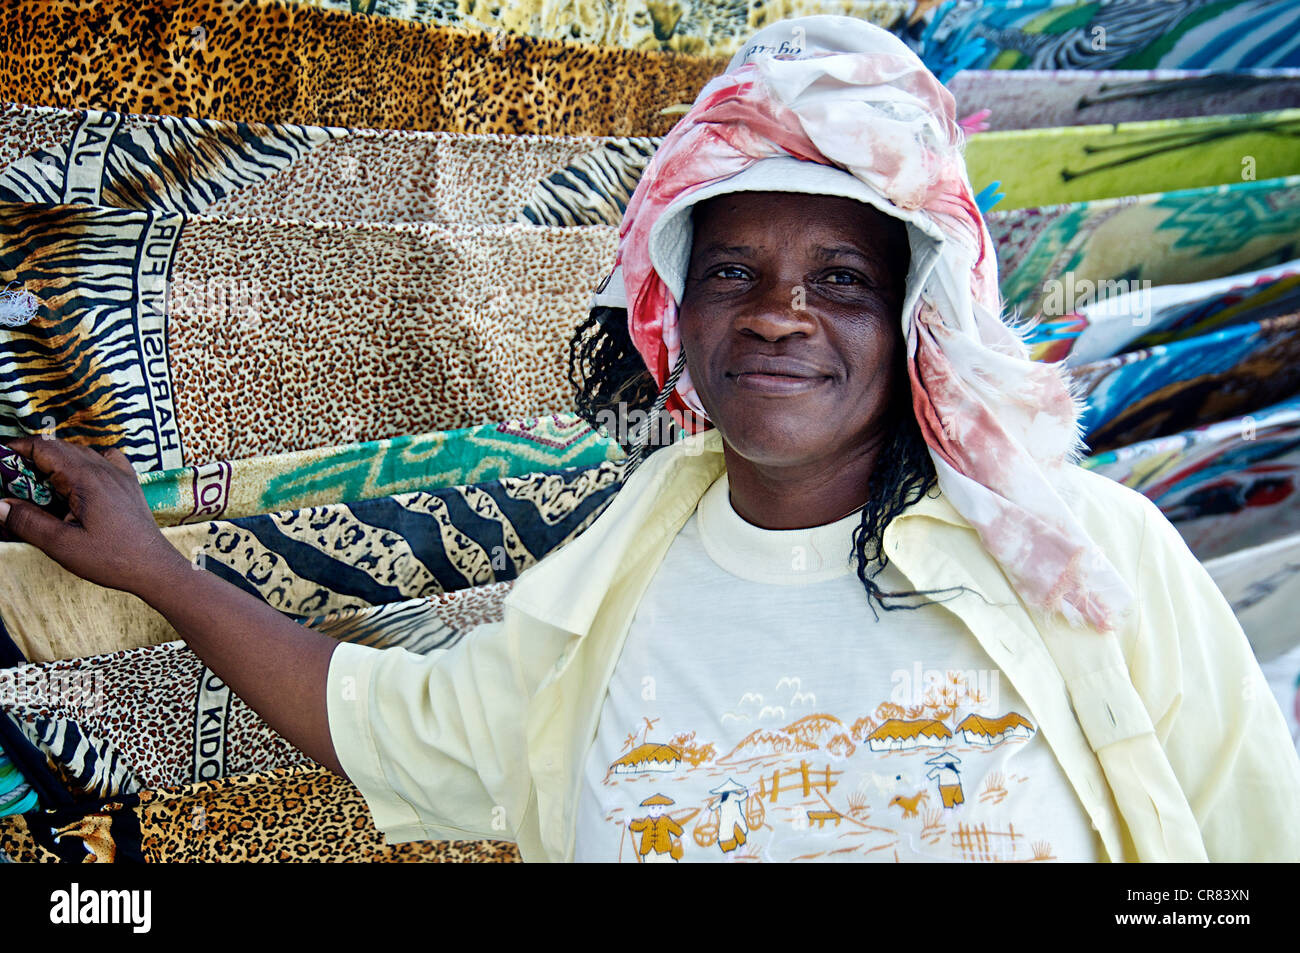 Portrait d'une femme vendant du tissu, Mombasa, Kenya, Afrique de l'Est Banque D'Images